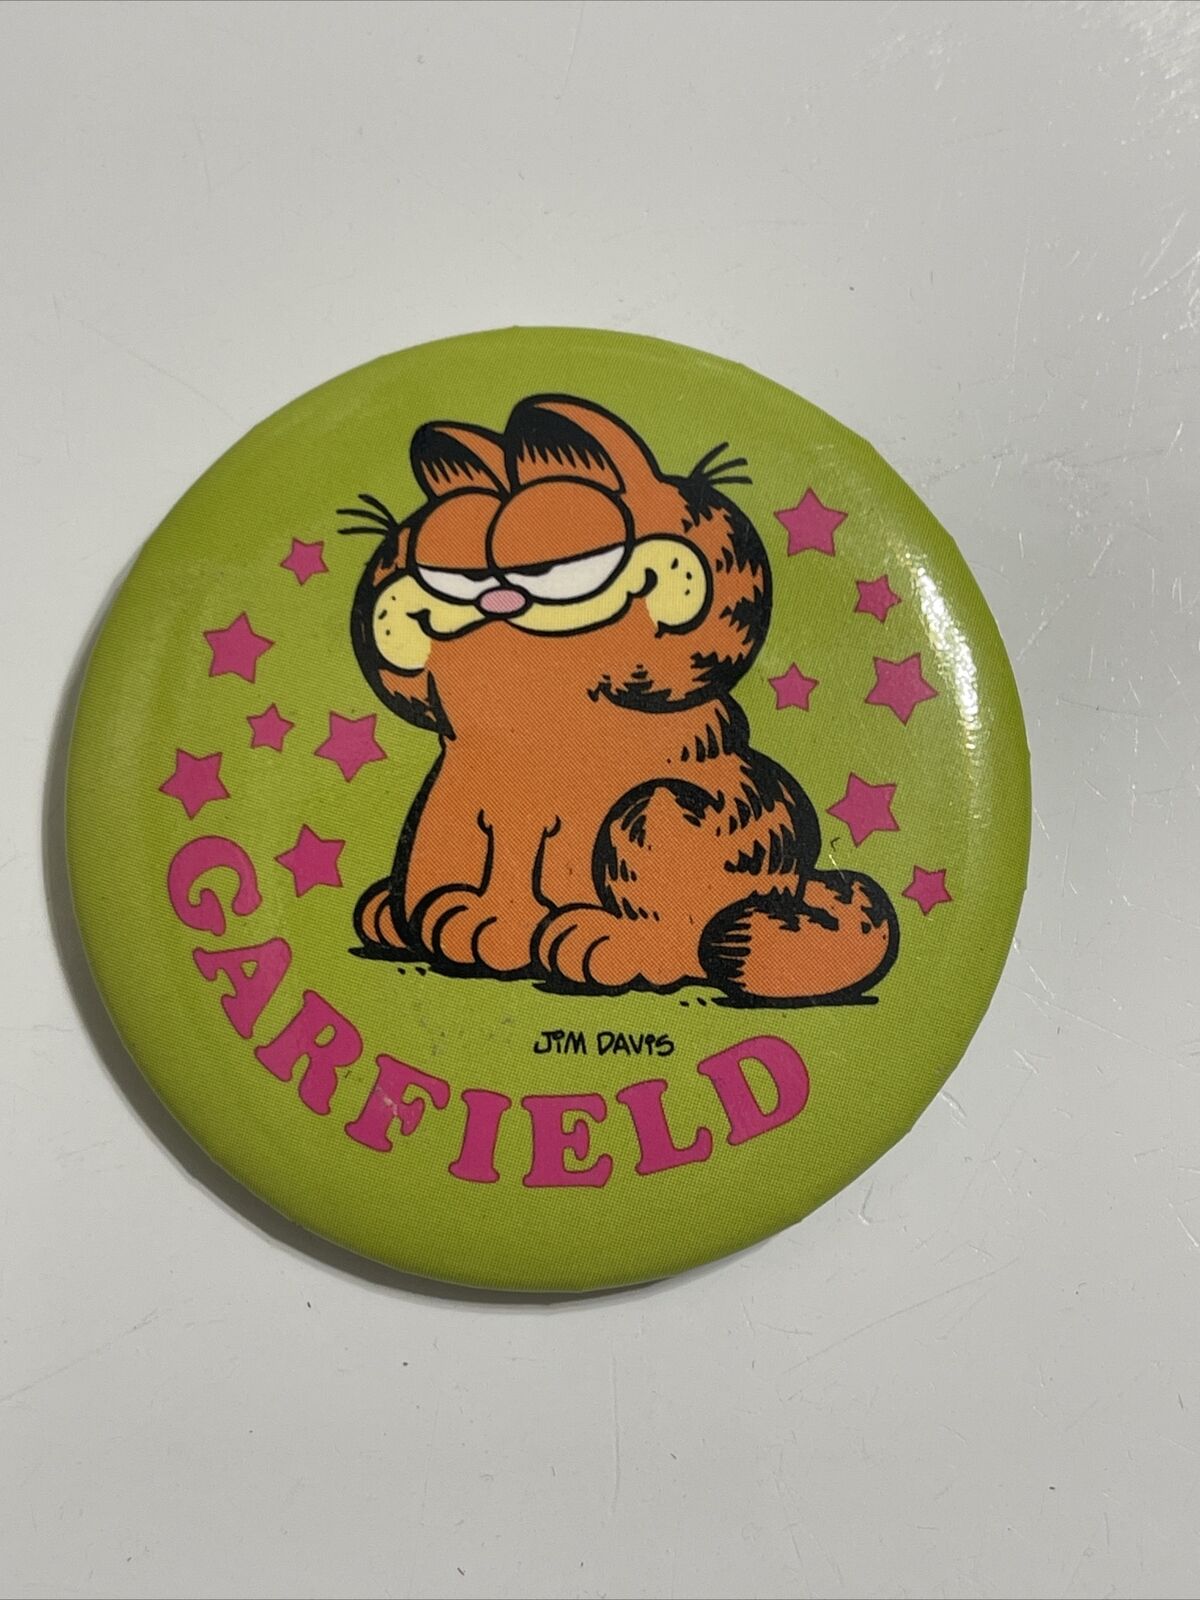 Garfield Green Orange Cat 1978 Jim Davis Vintage Metal Pinback Pin Button